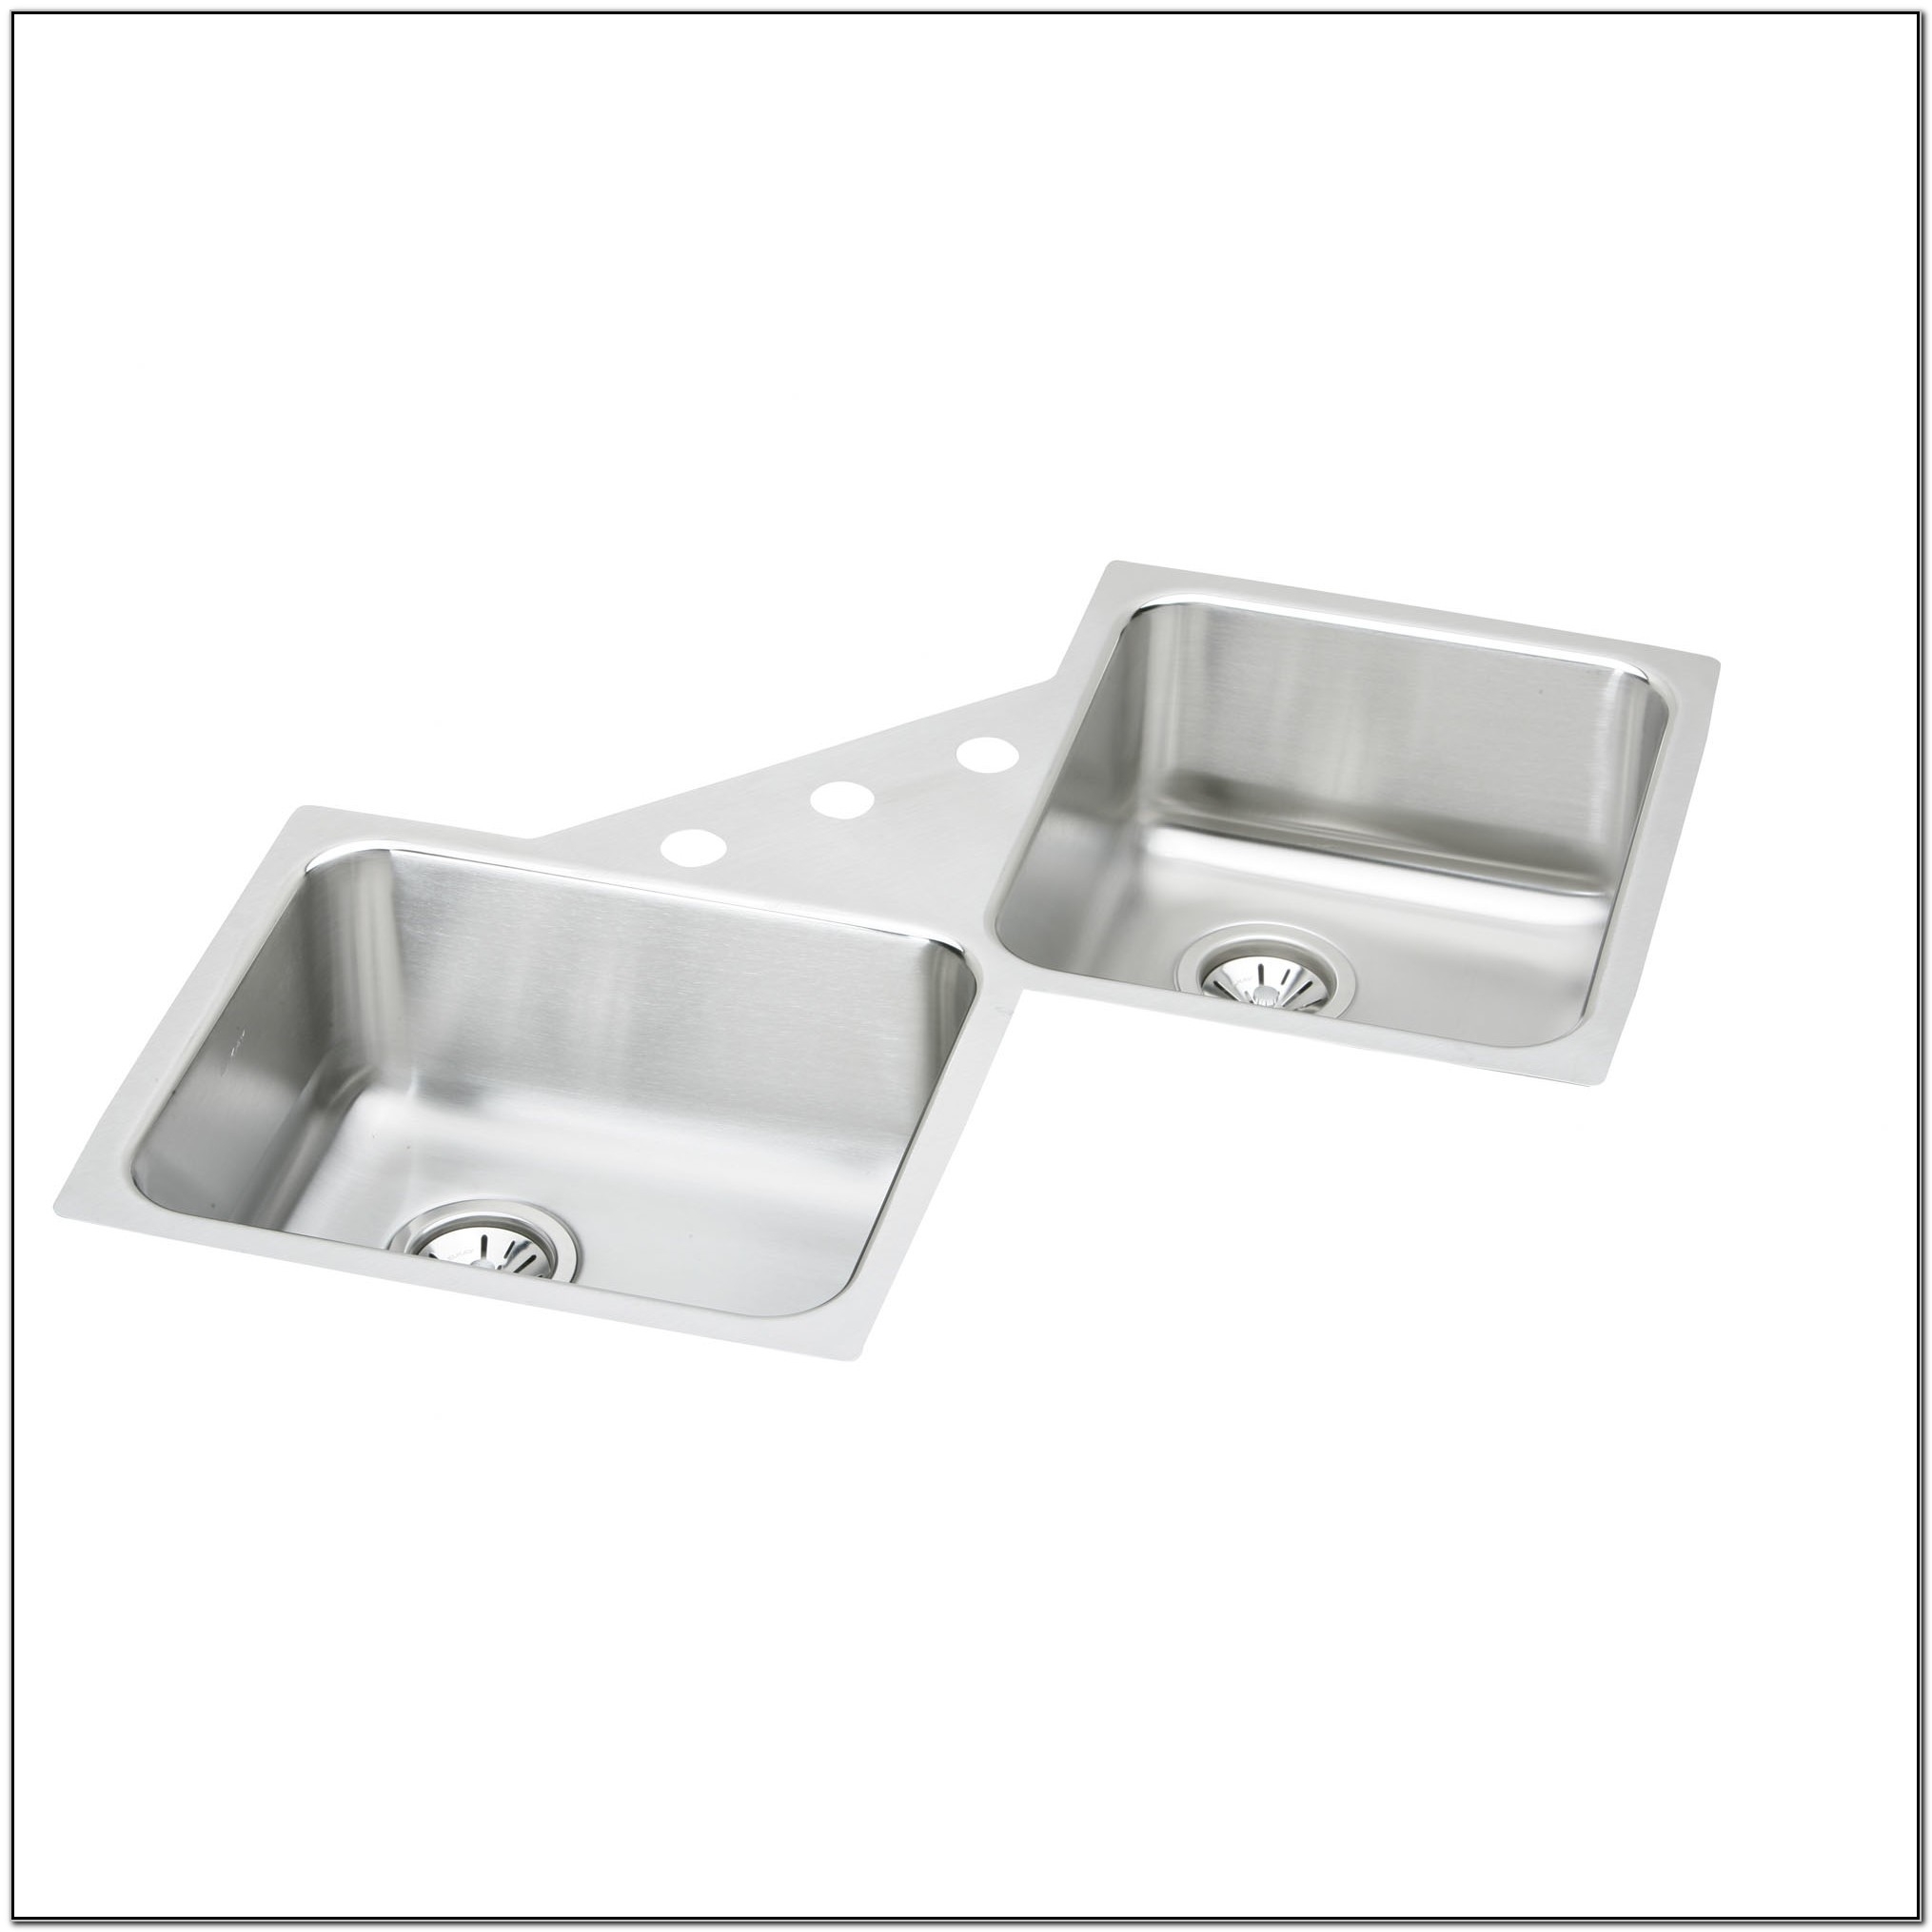 Lustertone 32" x 32" Undermount Double Bowl Corner Kitchen Sink